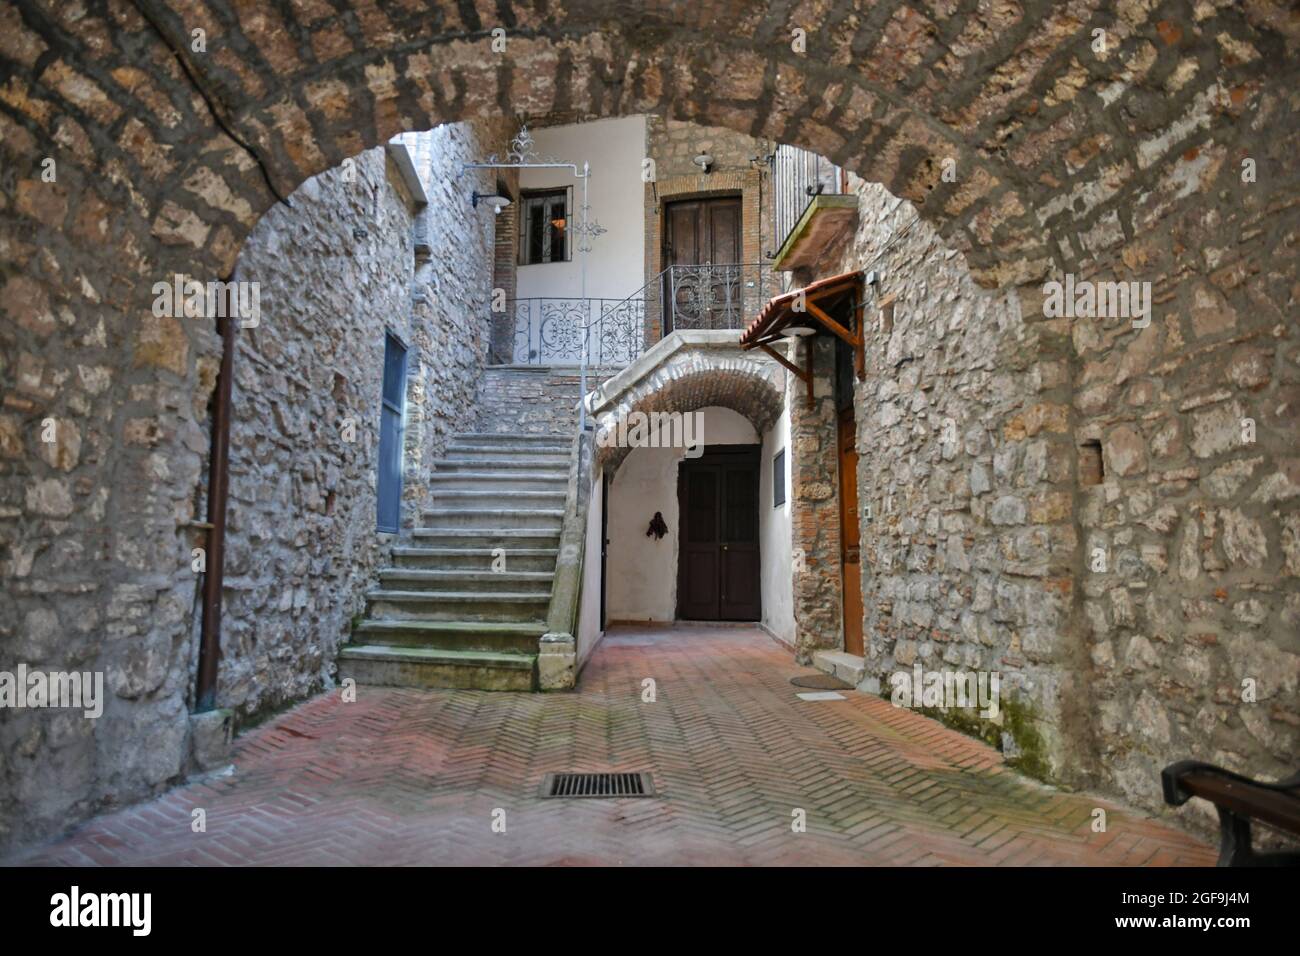 Entrée dans la cour d'une ancienne maison dans le centre historique d'une vieille ville de la province de Potenza, Italie. Banque D'Images